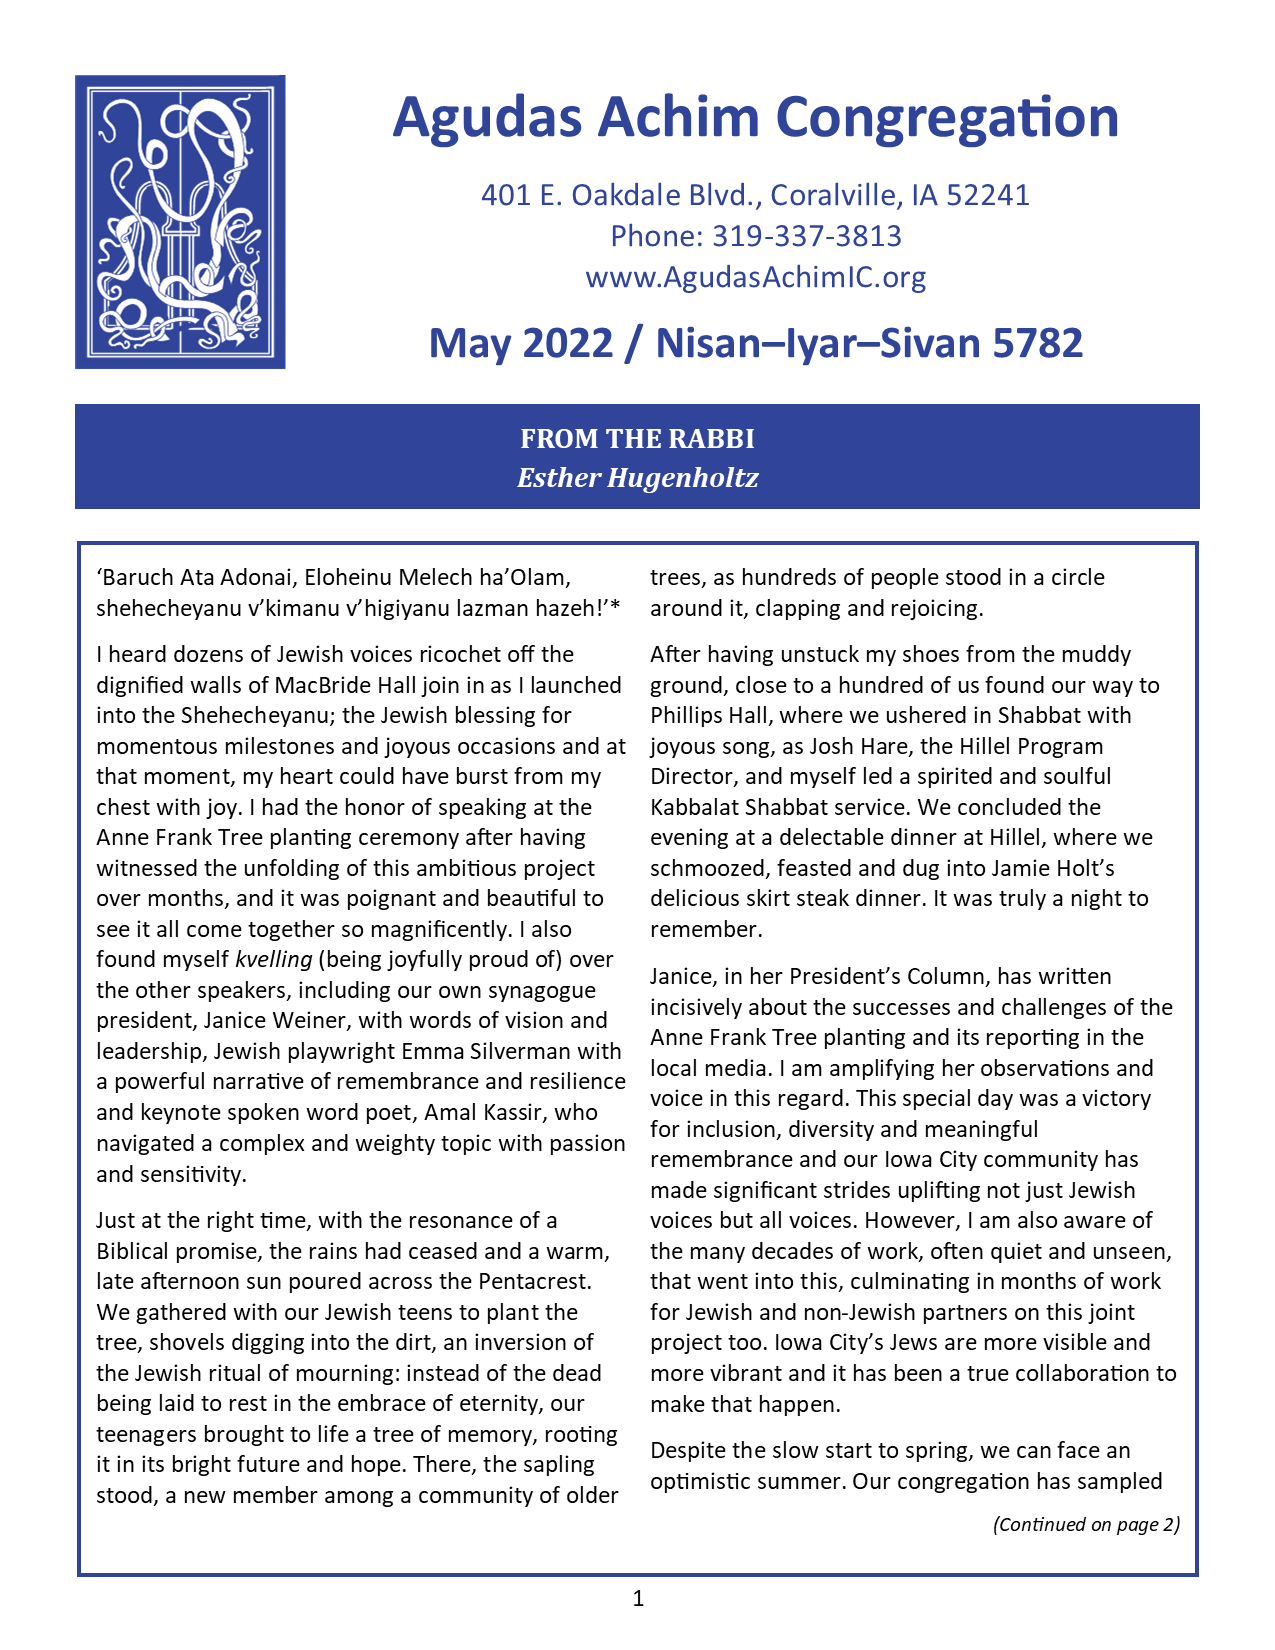 May 2022 Bulletin